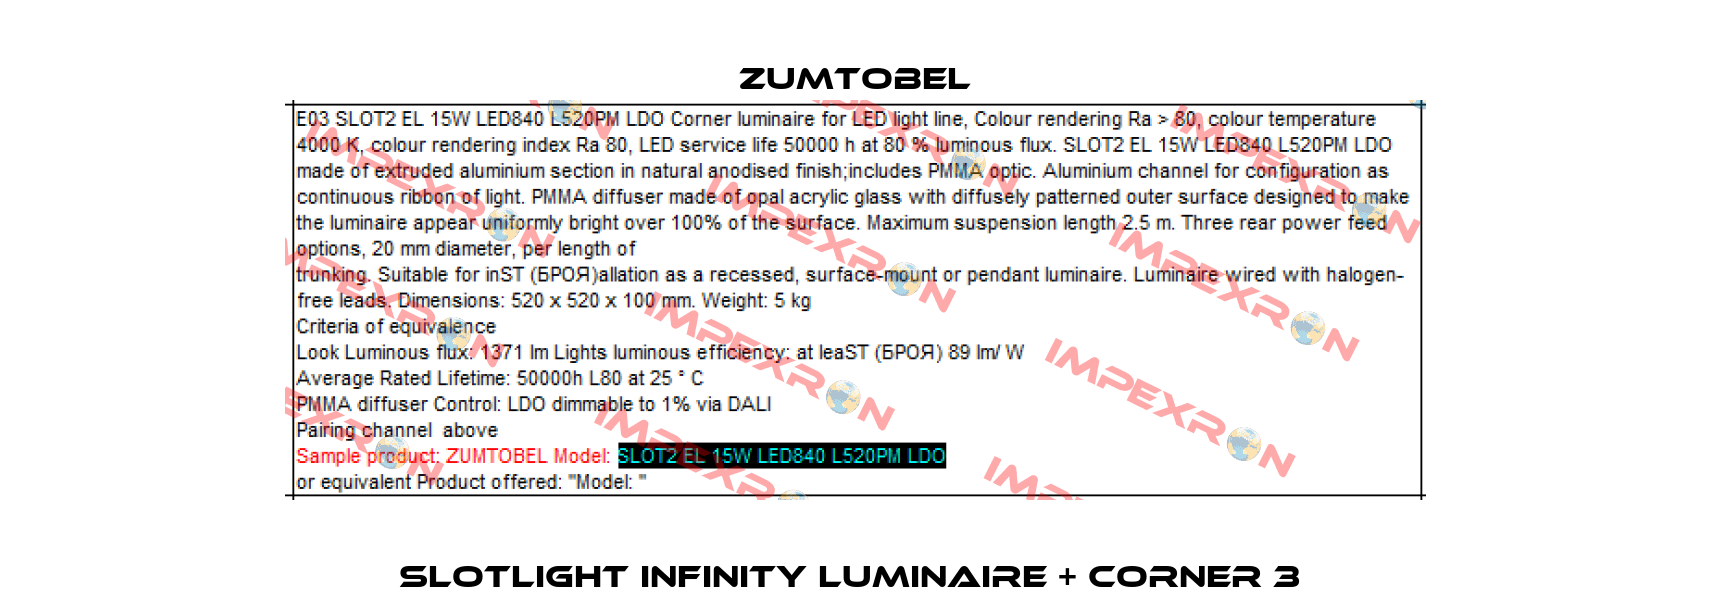 SLOTLIGHT INFINITY luminaire + corner 3  Zumtobel